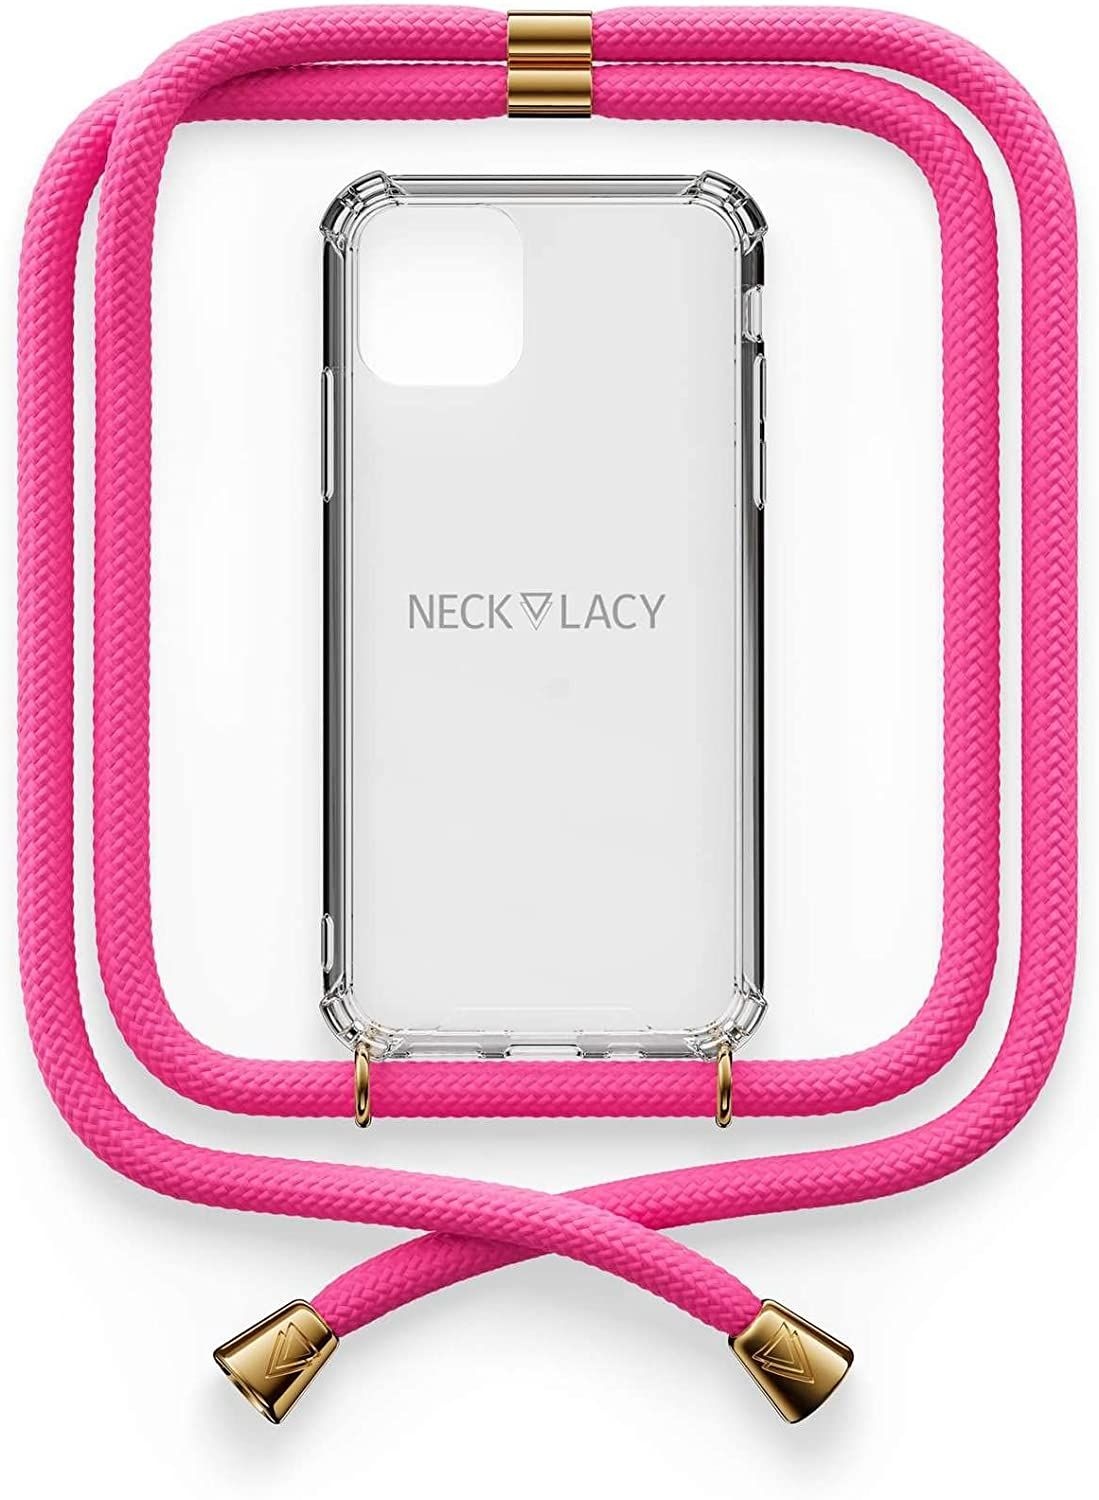 NECKLACY Handykette Handyhülle zum umhängen - für iPhone 11 Pro - Case / Handyhülle mit Band zum umhängen - Trageband Hals mit Kordel - Smartphone Necklace, Cotton Candy